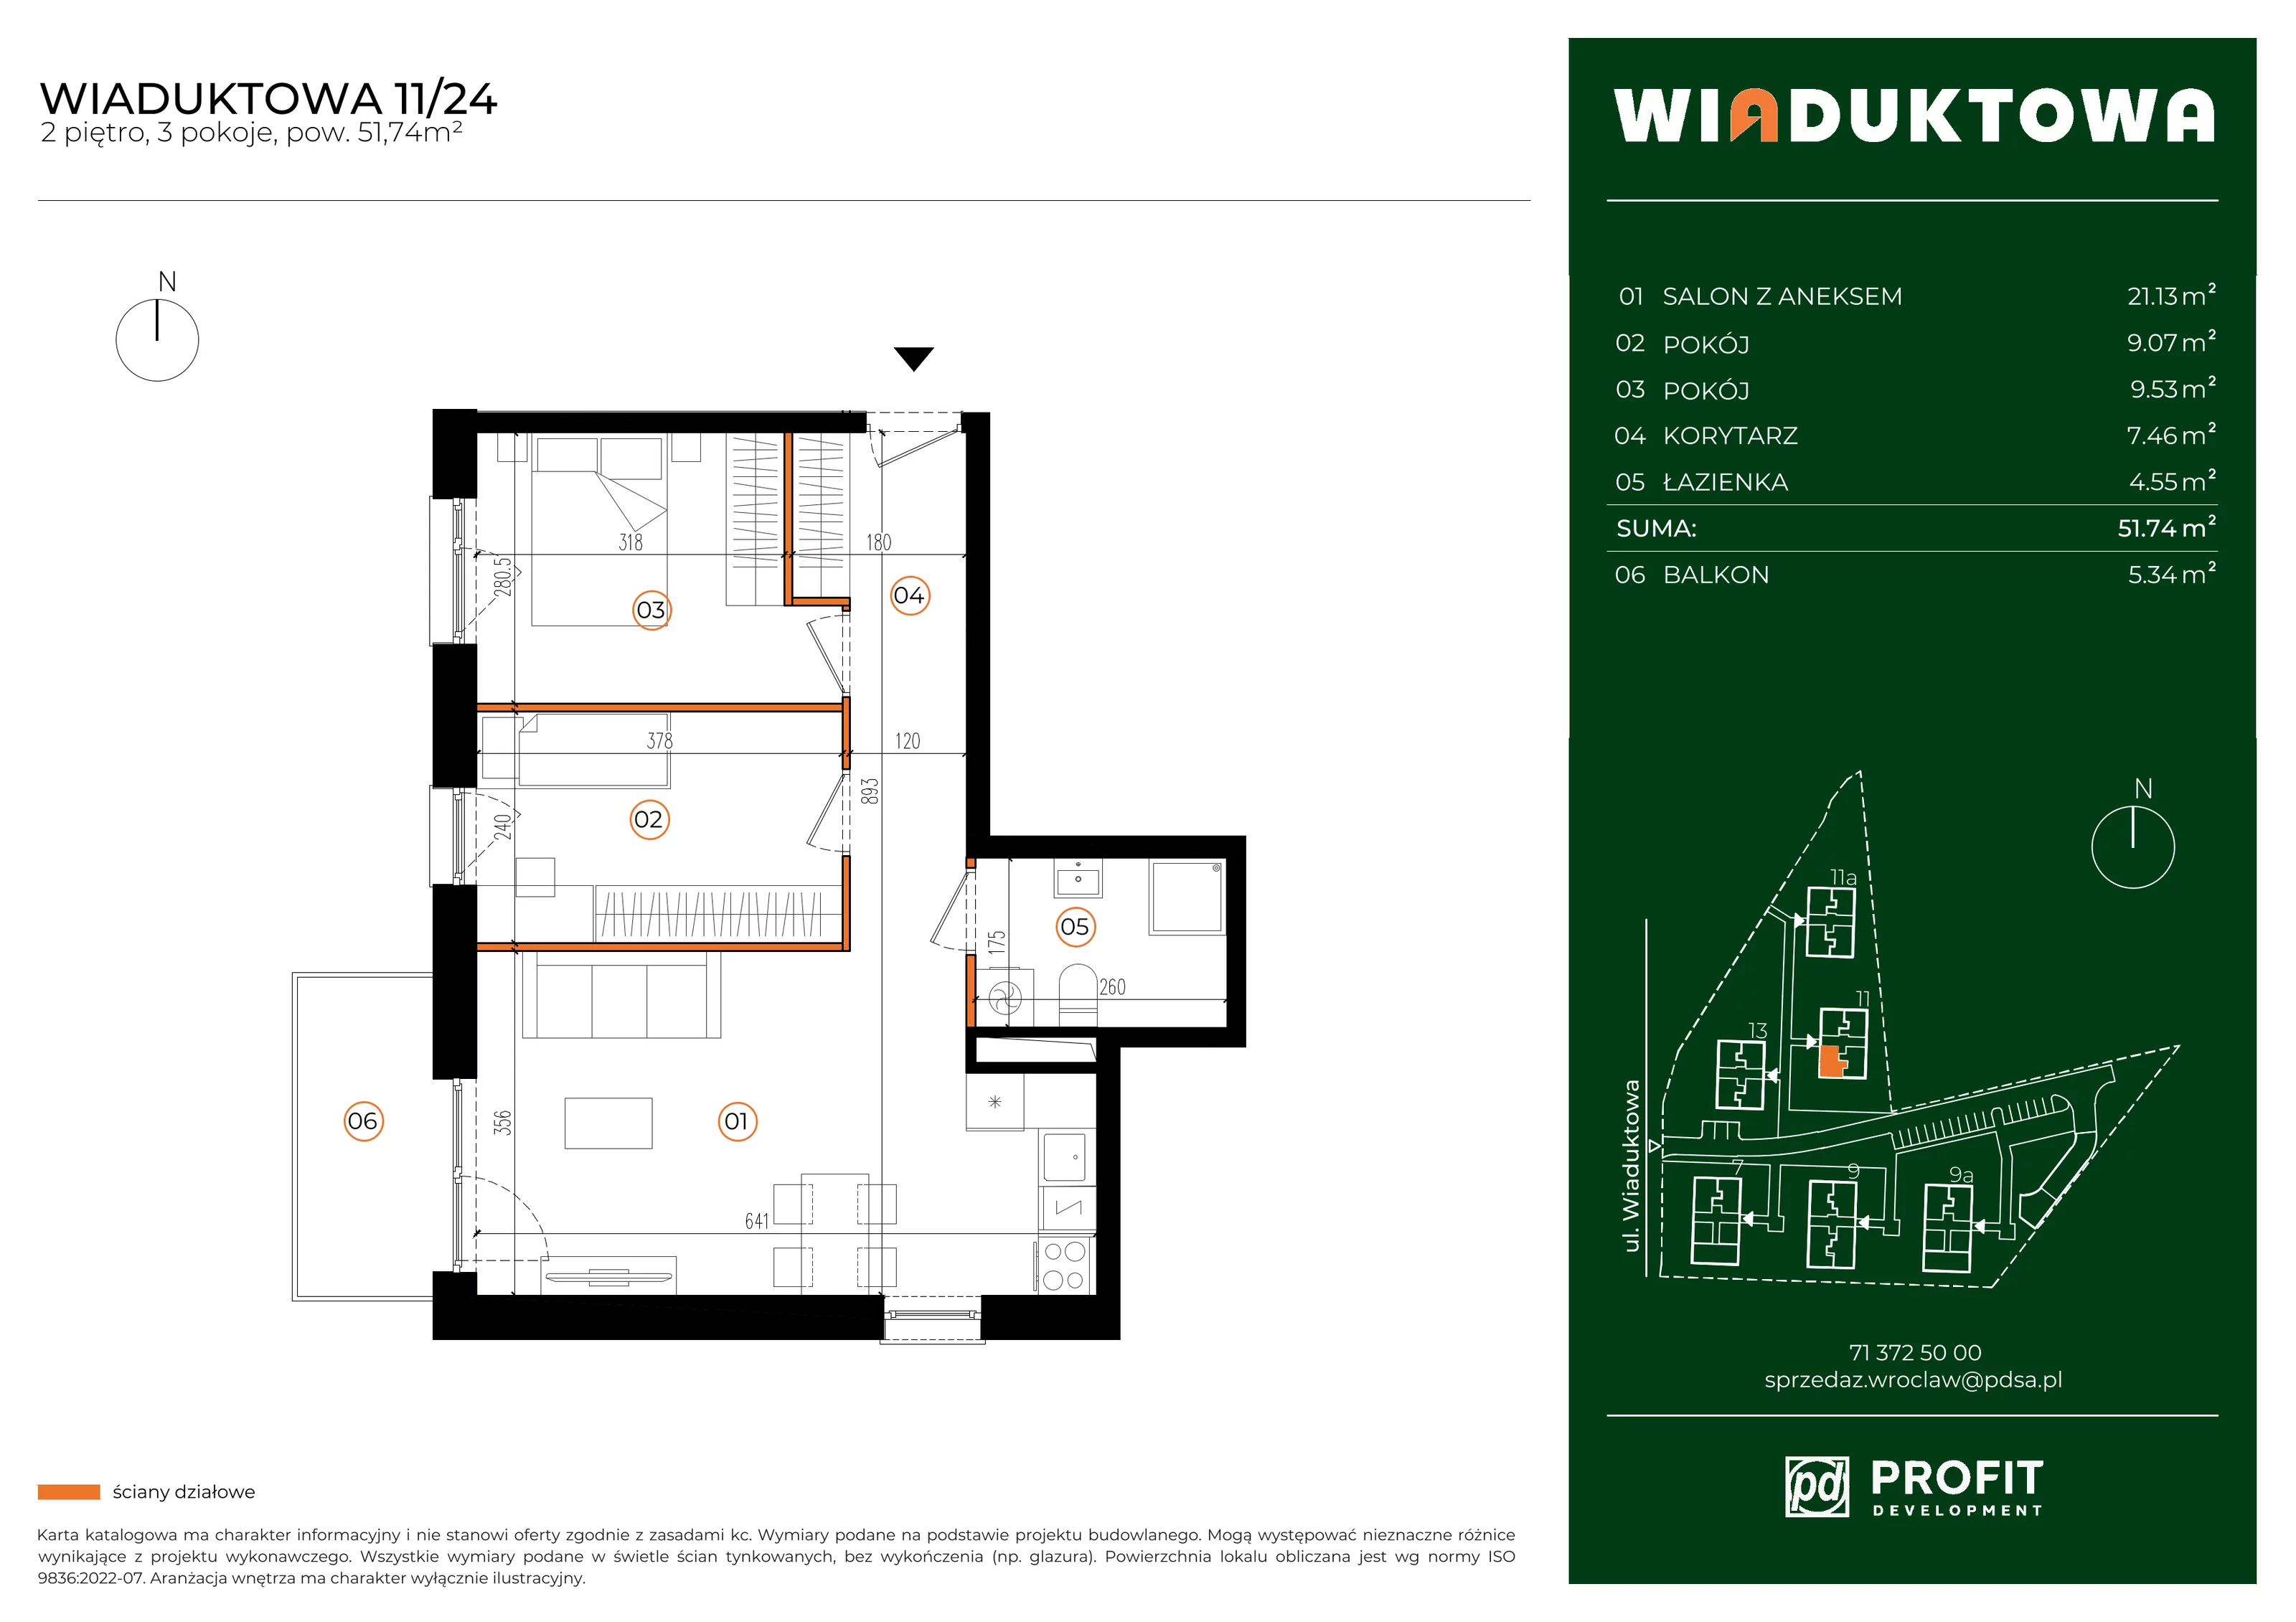 Mieszkanie 51,74 m², piętro 2, oferta nr WI/11/24, Wiaduktowa, Wrocław, Krzyki-Partynice, Krzyki, ul. Wiaduktowa